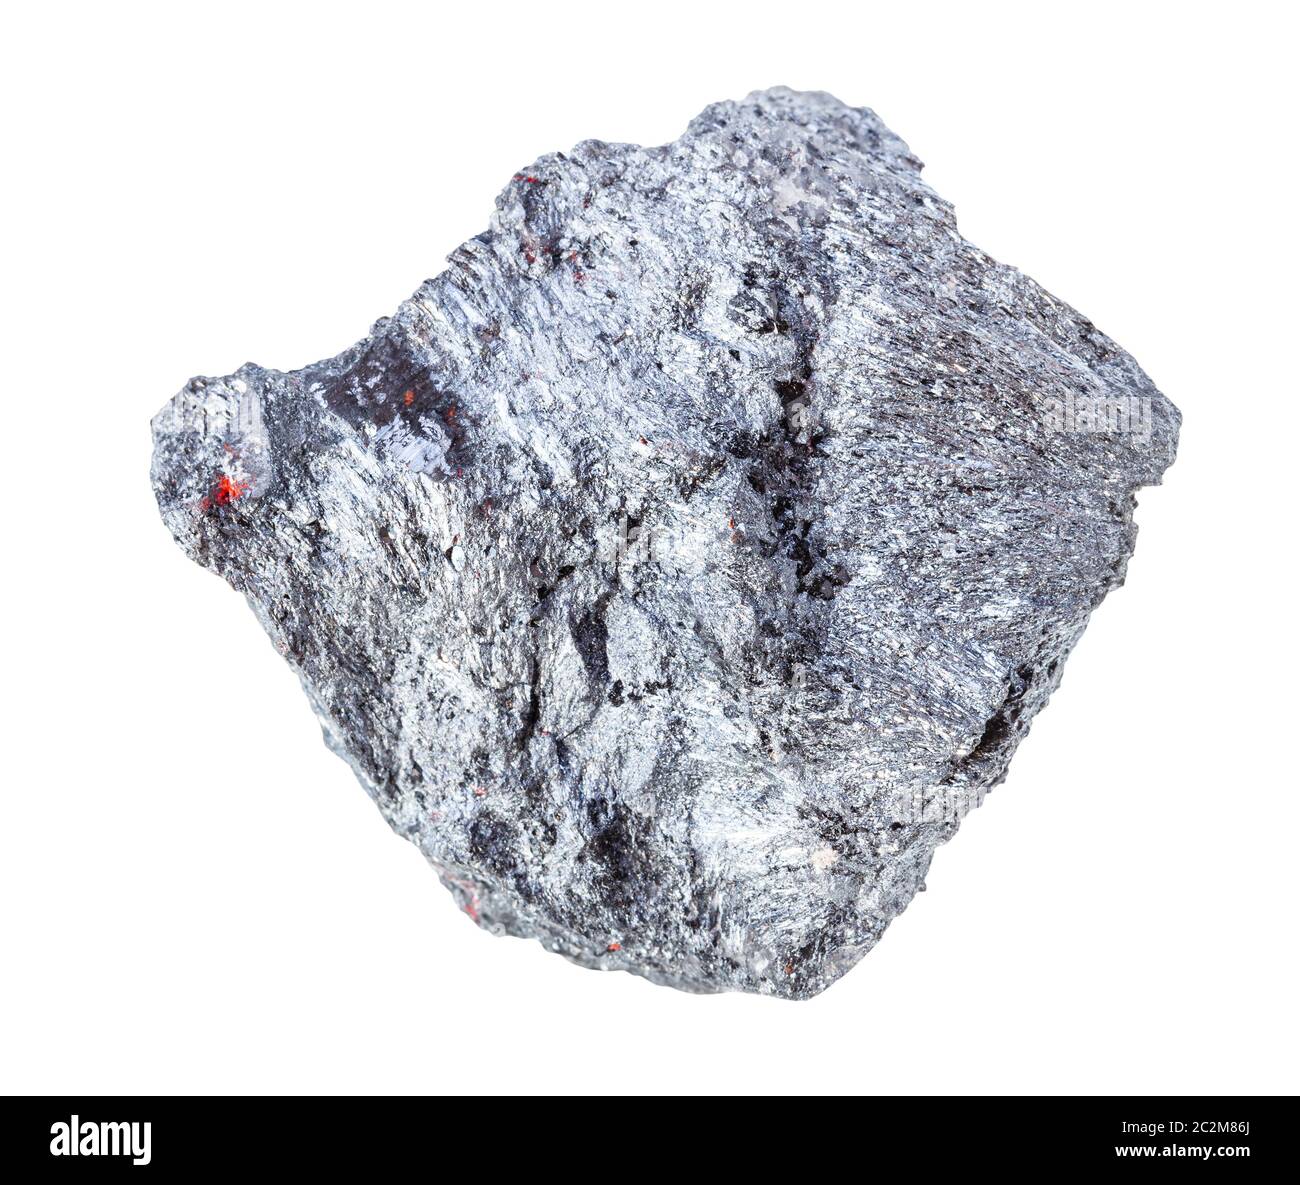 Gros plan de l'échantillon de minéraux naturels de la collection géologique - Minerai de Stibnite brute (antimonite) isolé sur fond blanc Banque D'Images